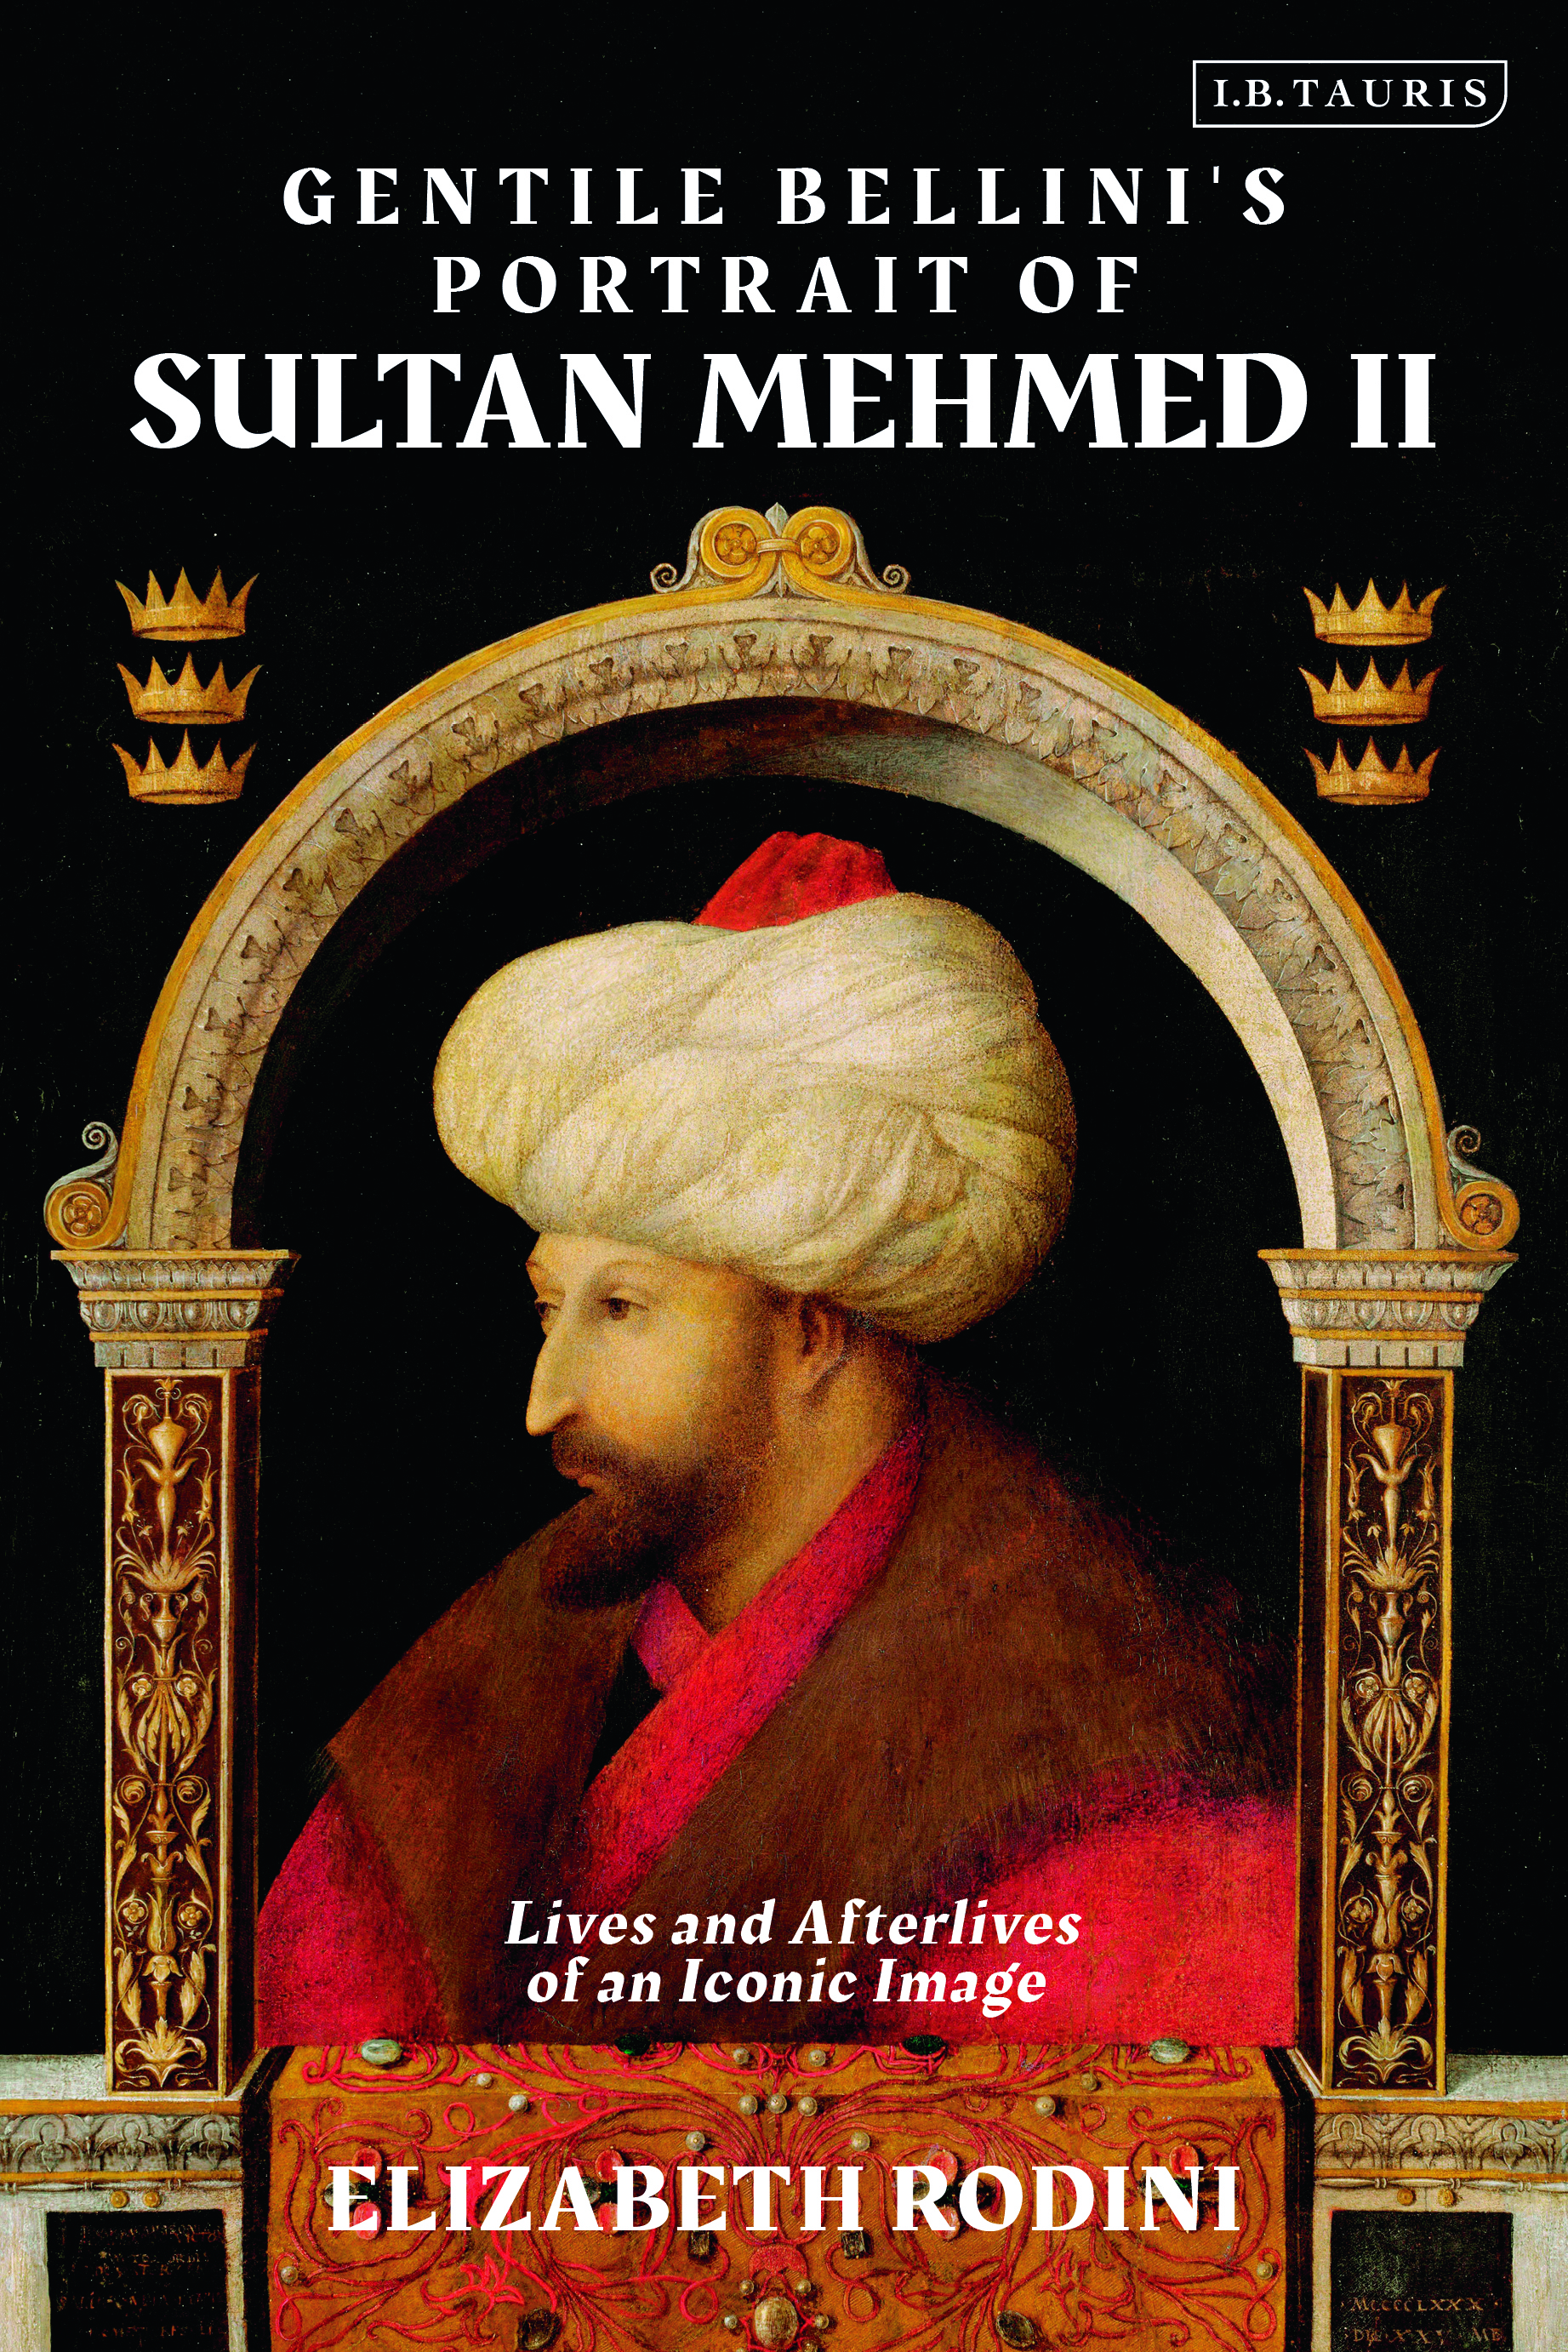 Book Review: Gentile Bellini’s Portrait of Sultan Mehmed II By Elizabeth Rodini ABJECT OBJECT